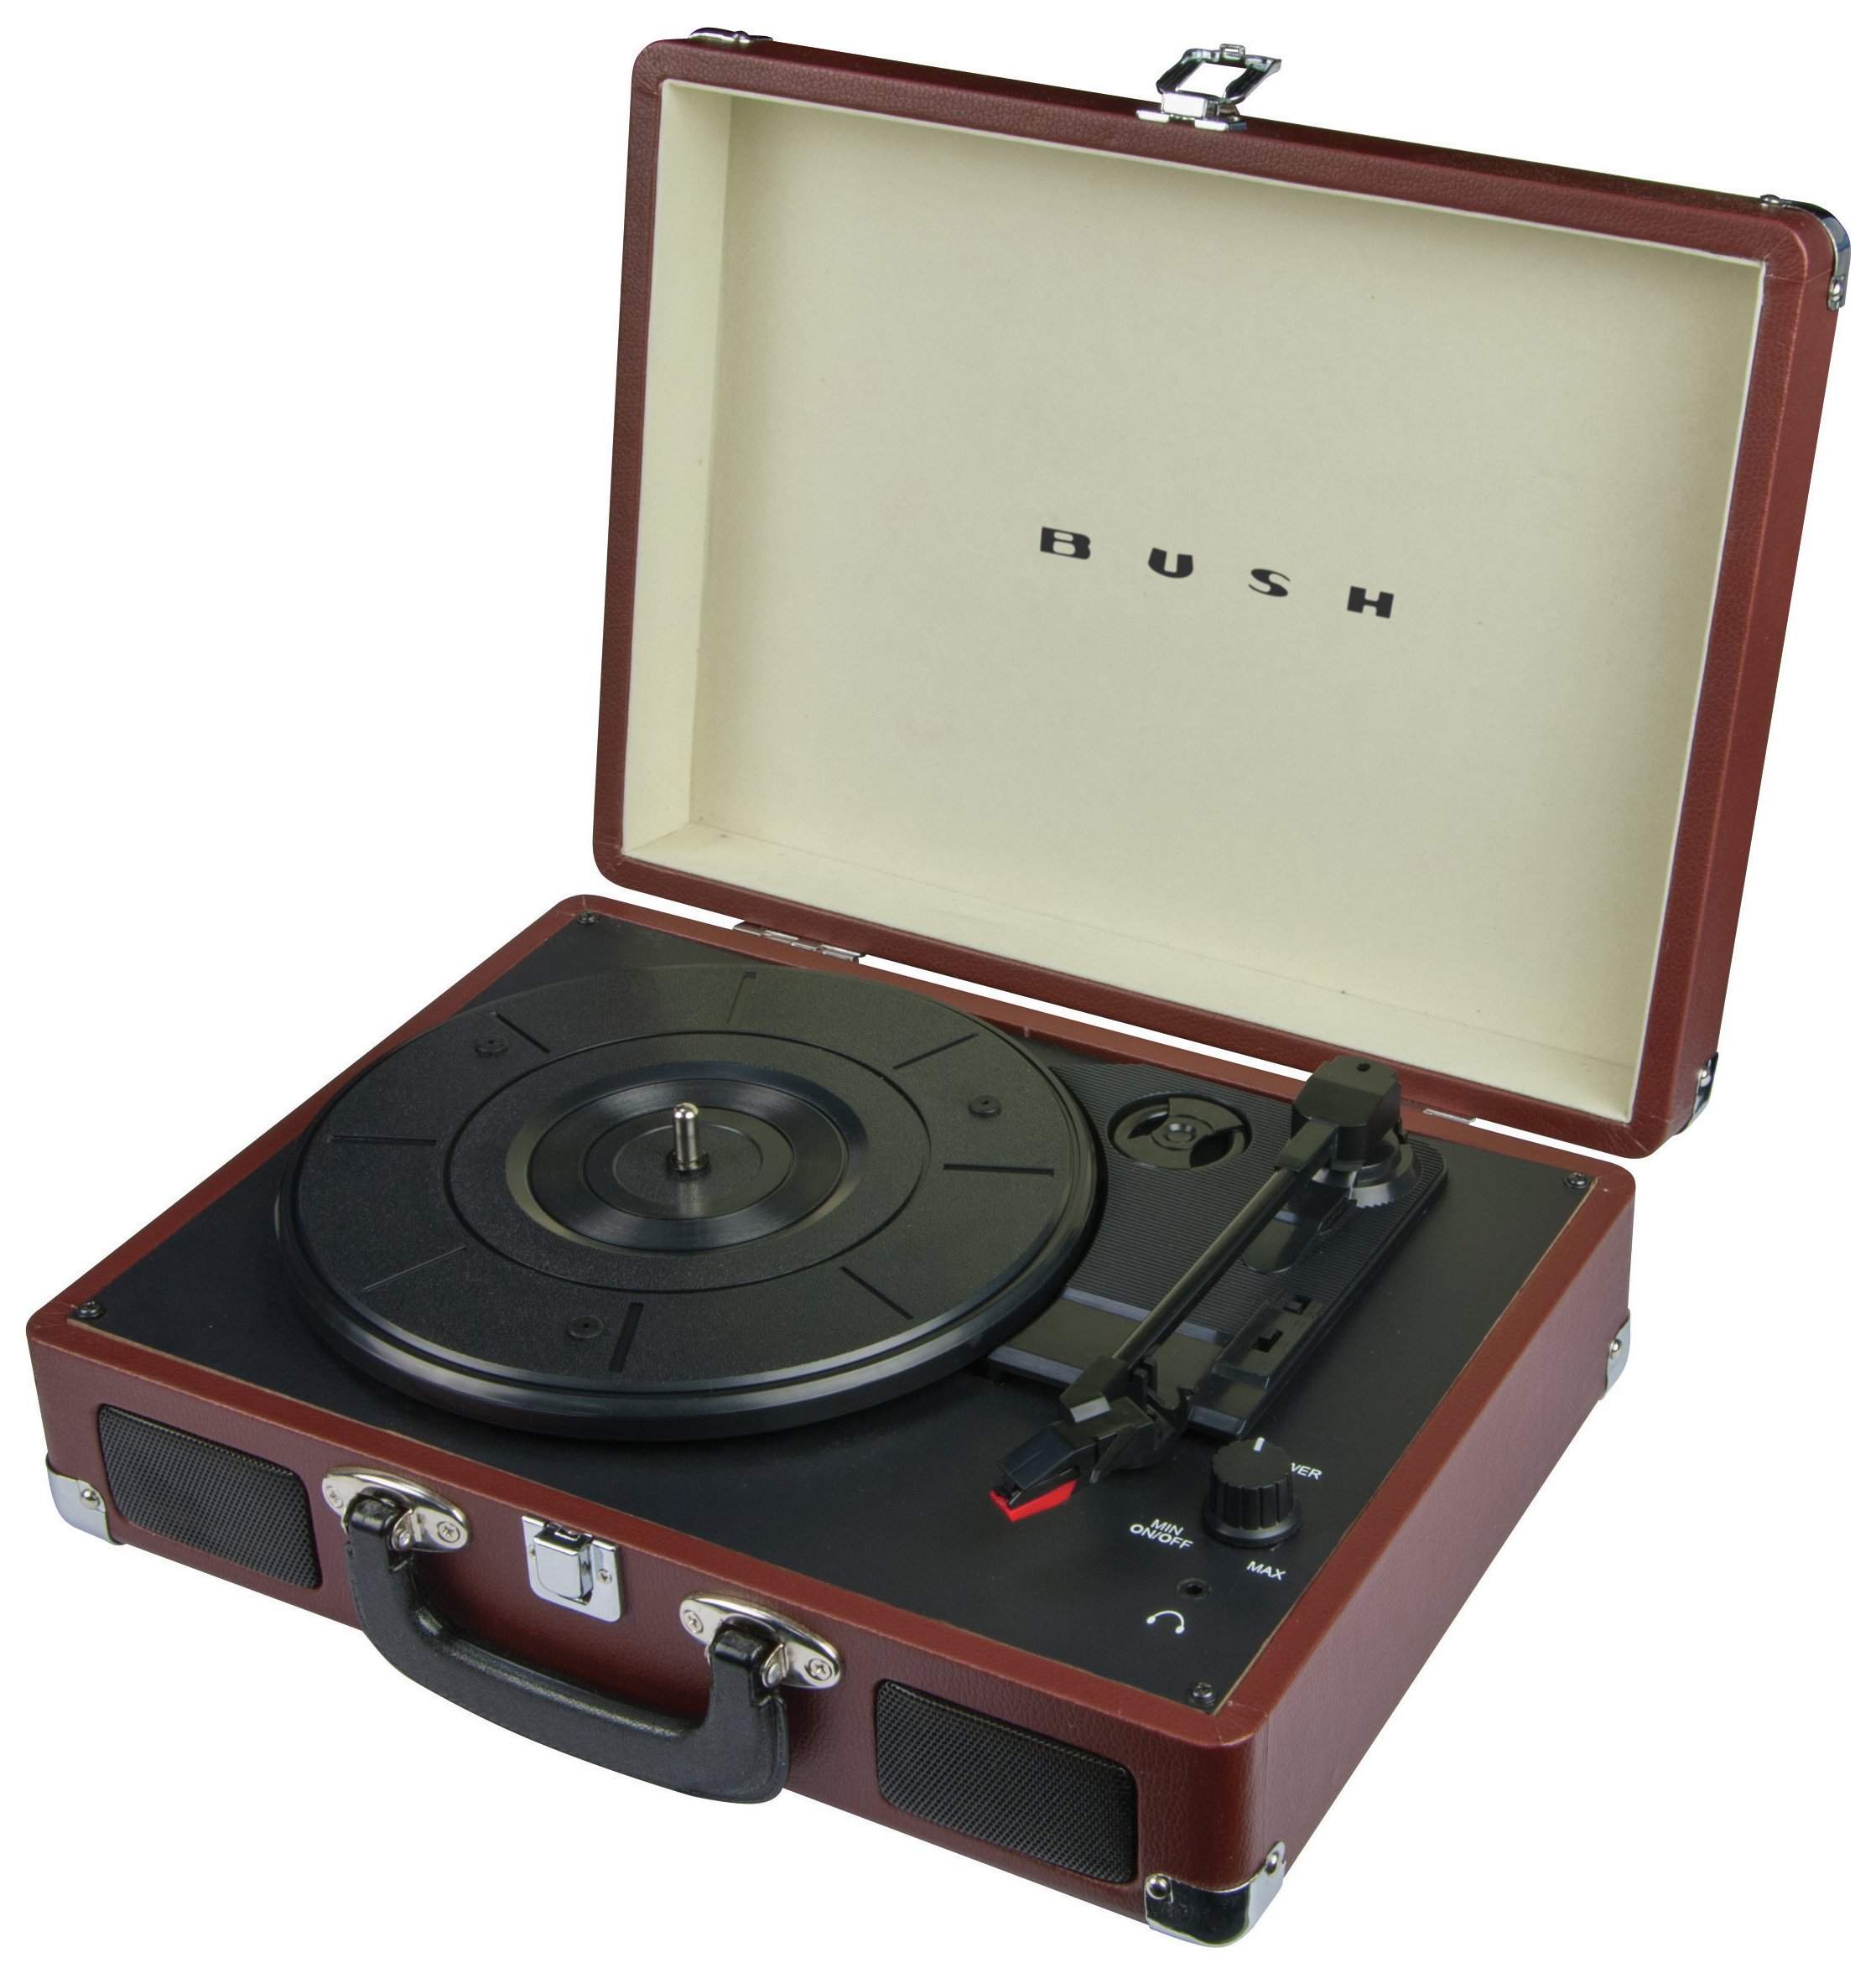 Bush Classic Retro Portable Case Record Player - Brown